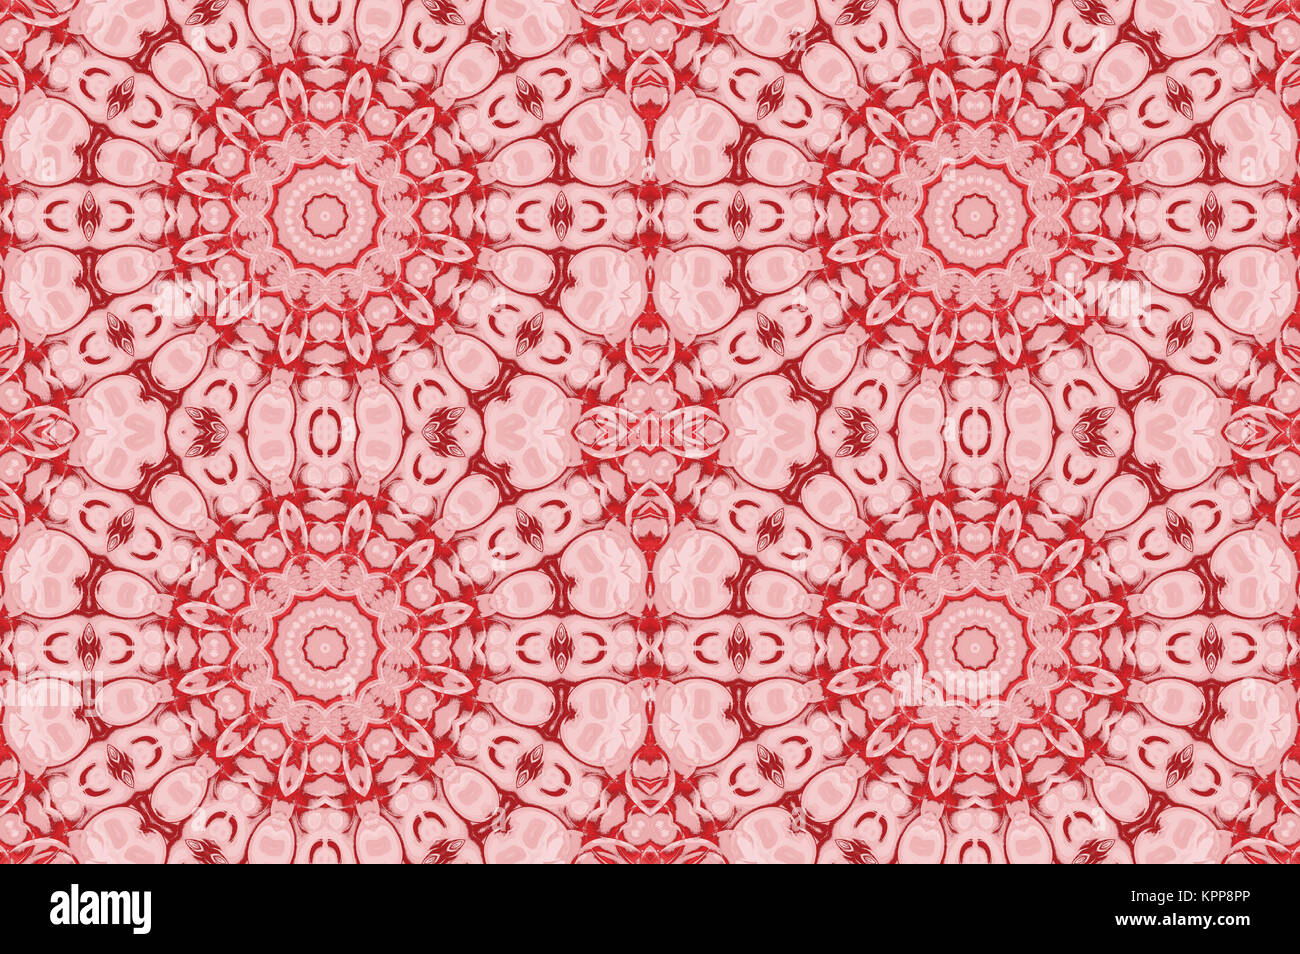 Geométrica abstracta de fondo sin fisuras. Círculo de ornamentos florales regulares en tonos rojos y rosados, ornamentado y soñador. Foto de stock